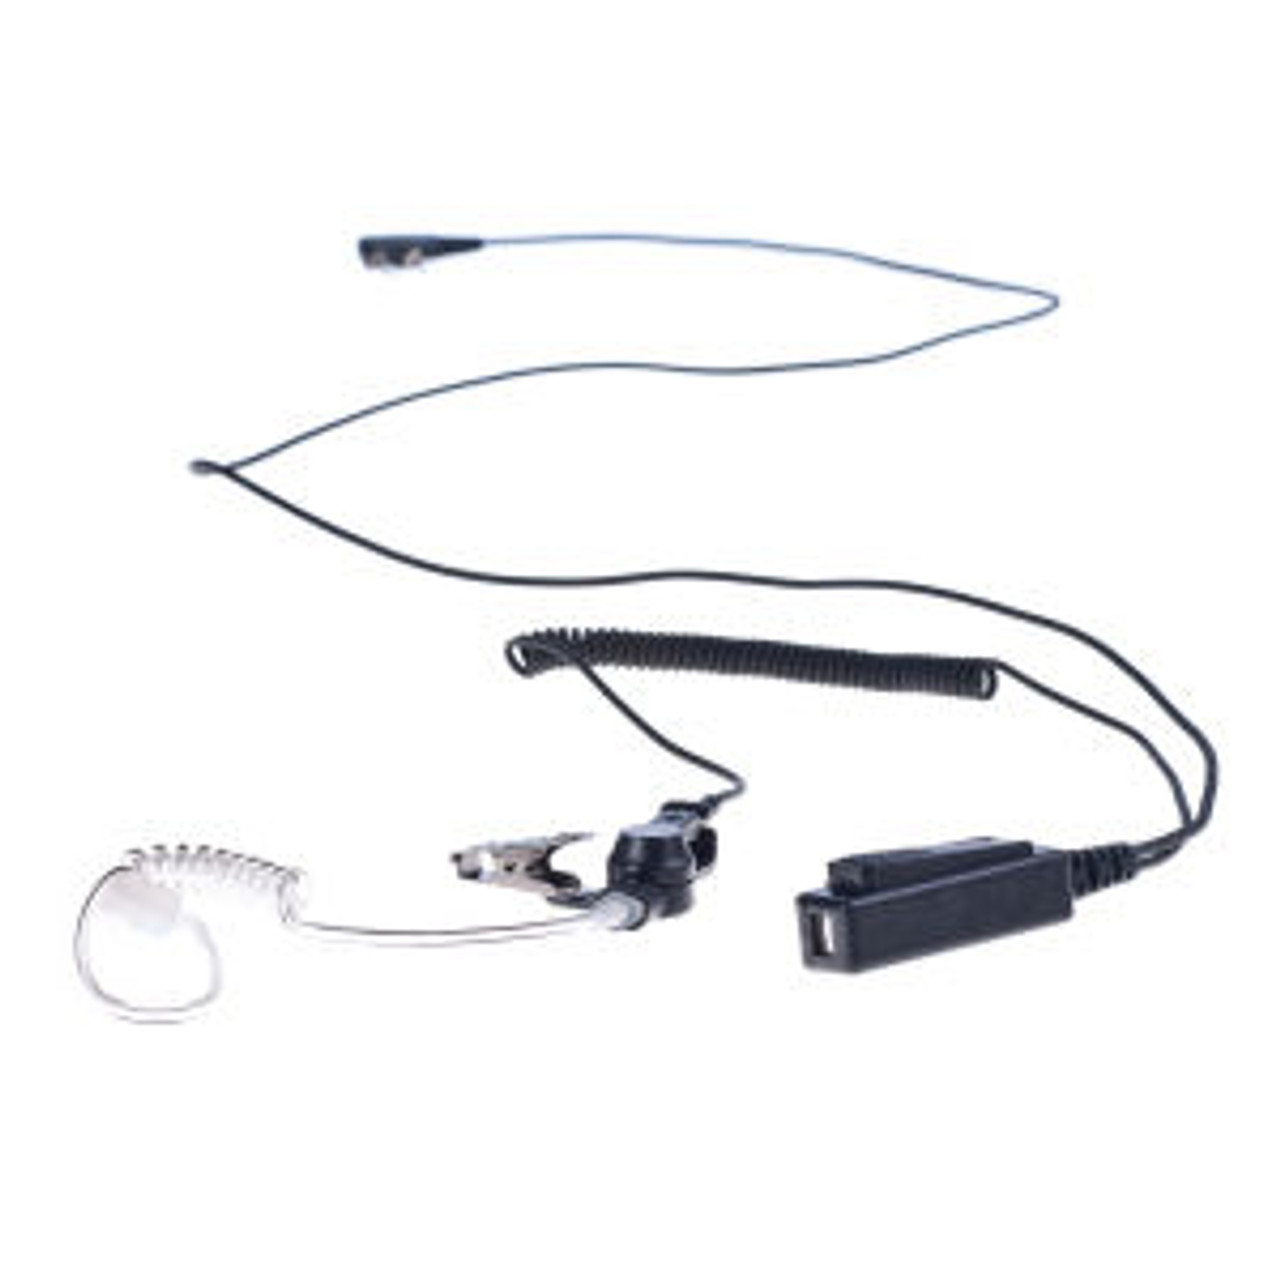 Relm RP4200A 1-Wire Surveillance Kit